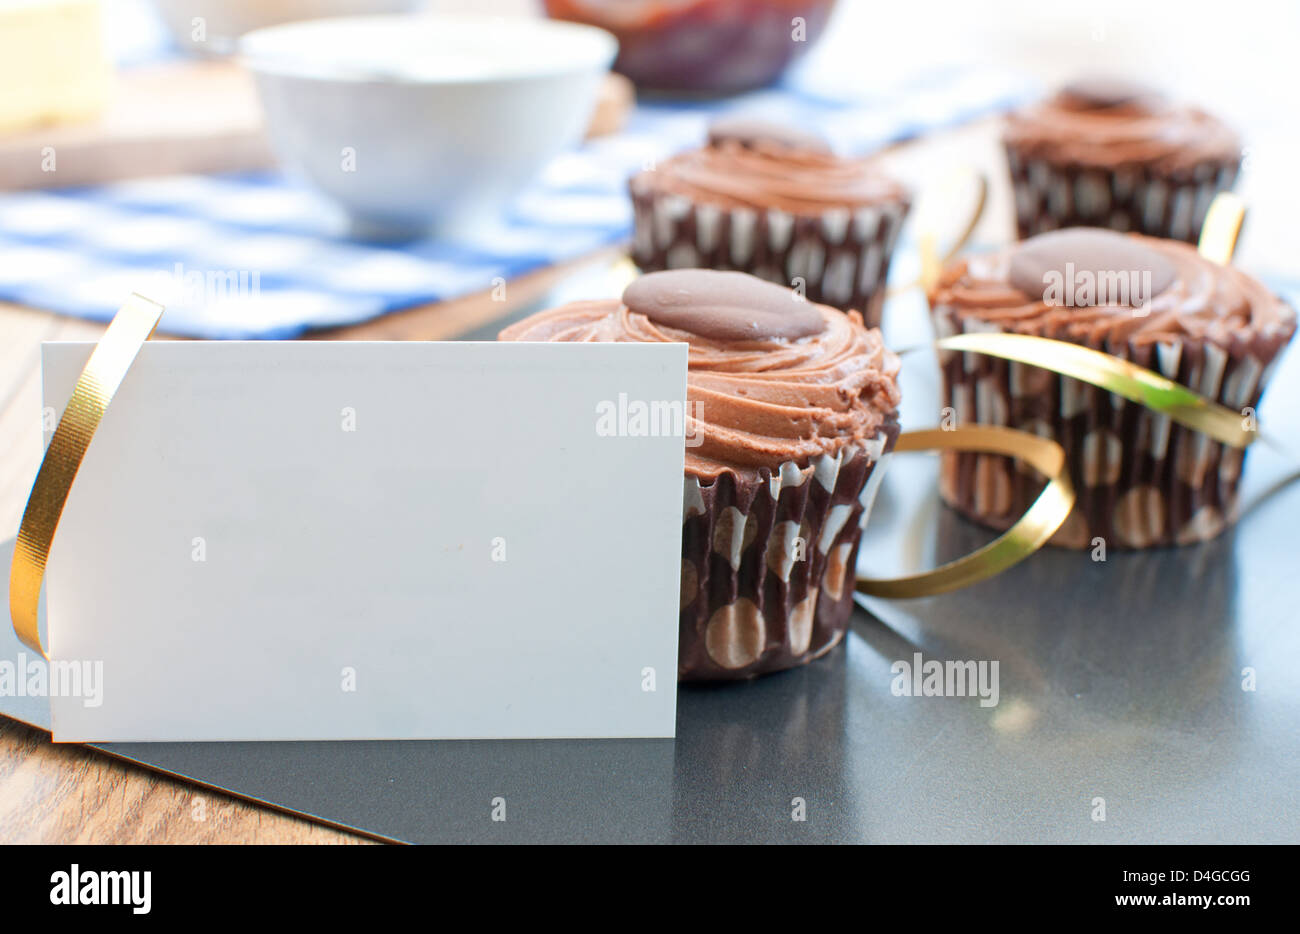 Leckere Schokolade Ostern Muffins auf ein Backblech mit einem Goldband Dekoration und leere Karte Stockfoto